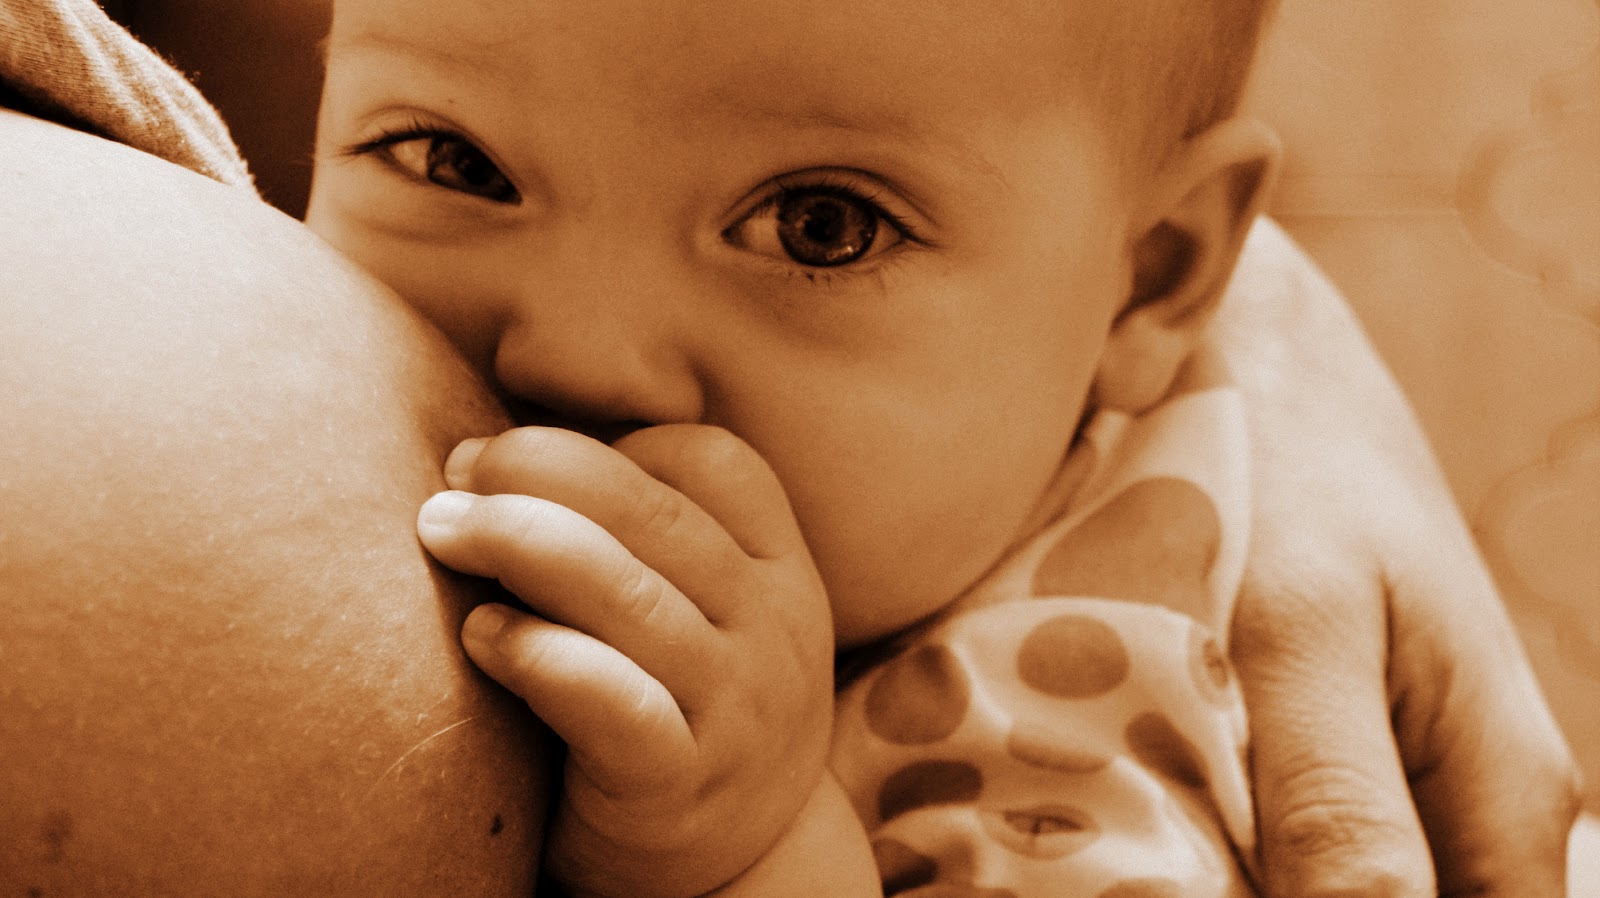 Bambino iperattivo: il latte materno lo aiuta!